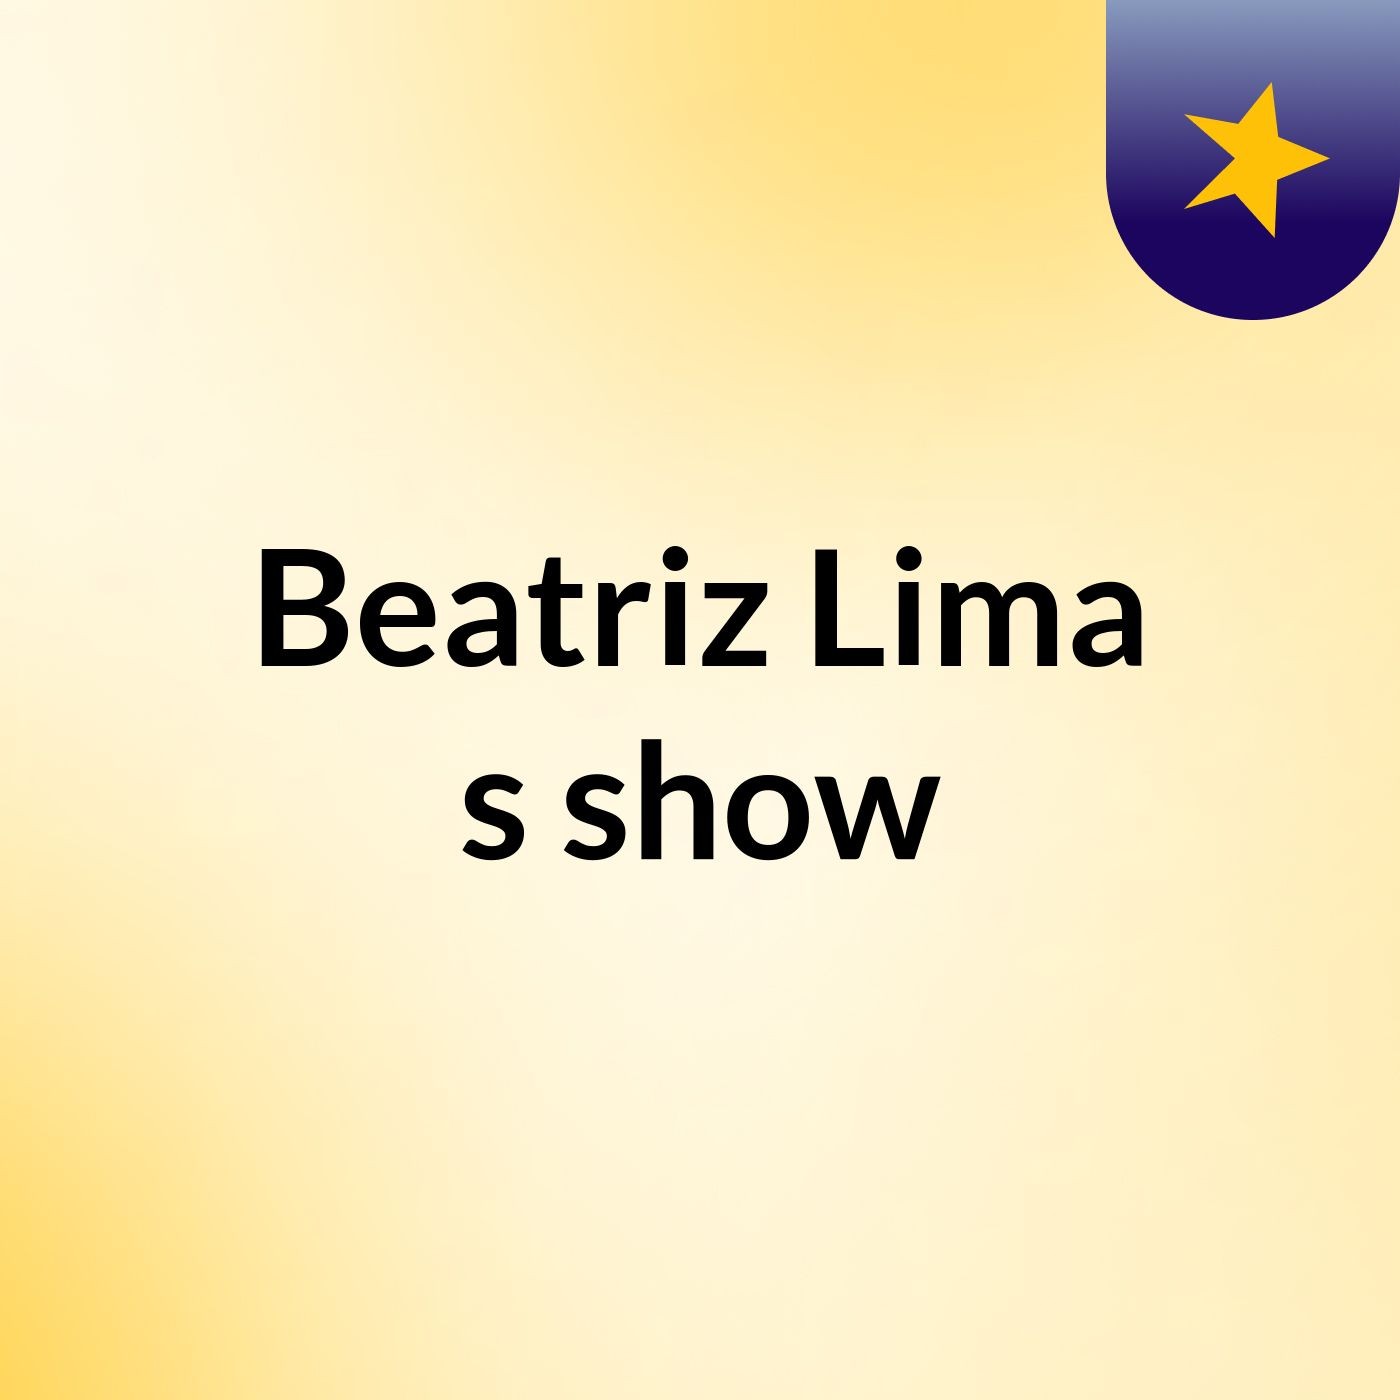 Beatriz Lima's show